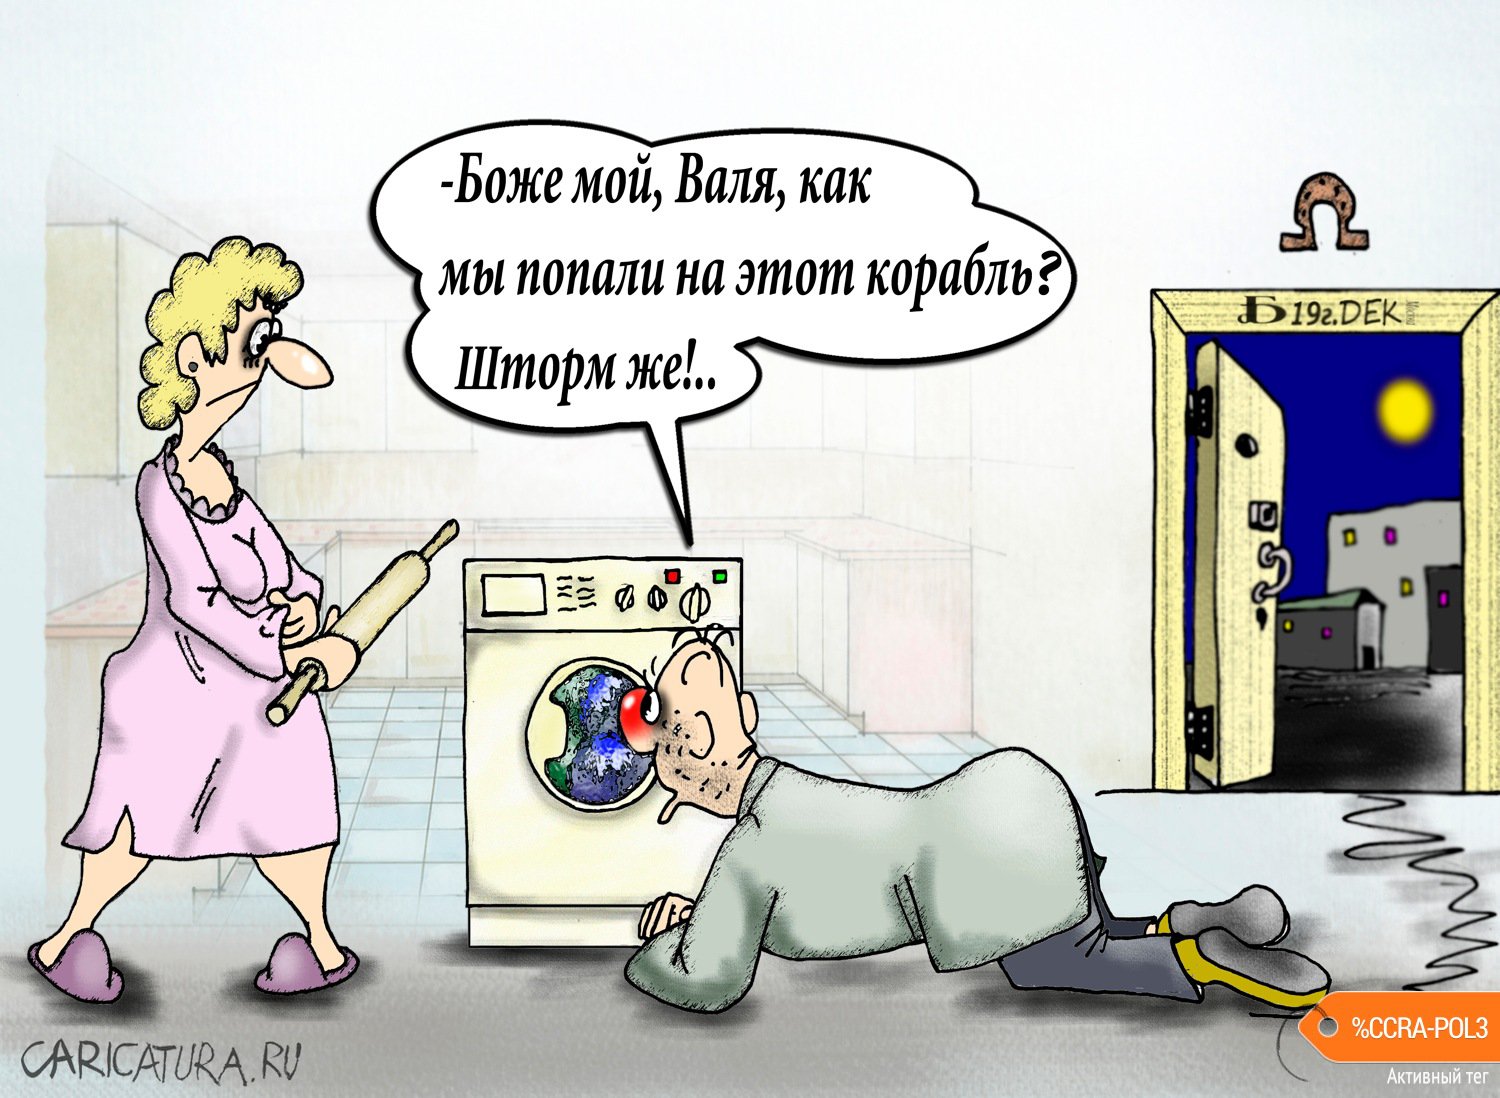 Карикатура "Про штормовое предупреждение", Борис Демин